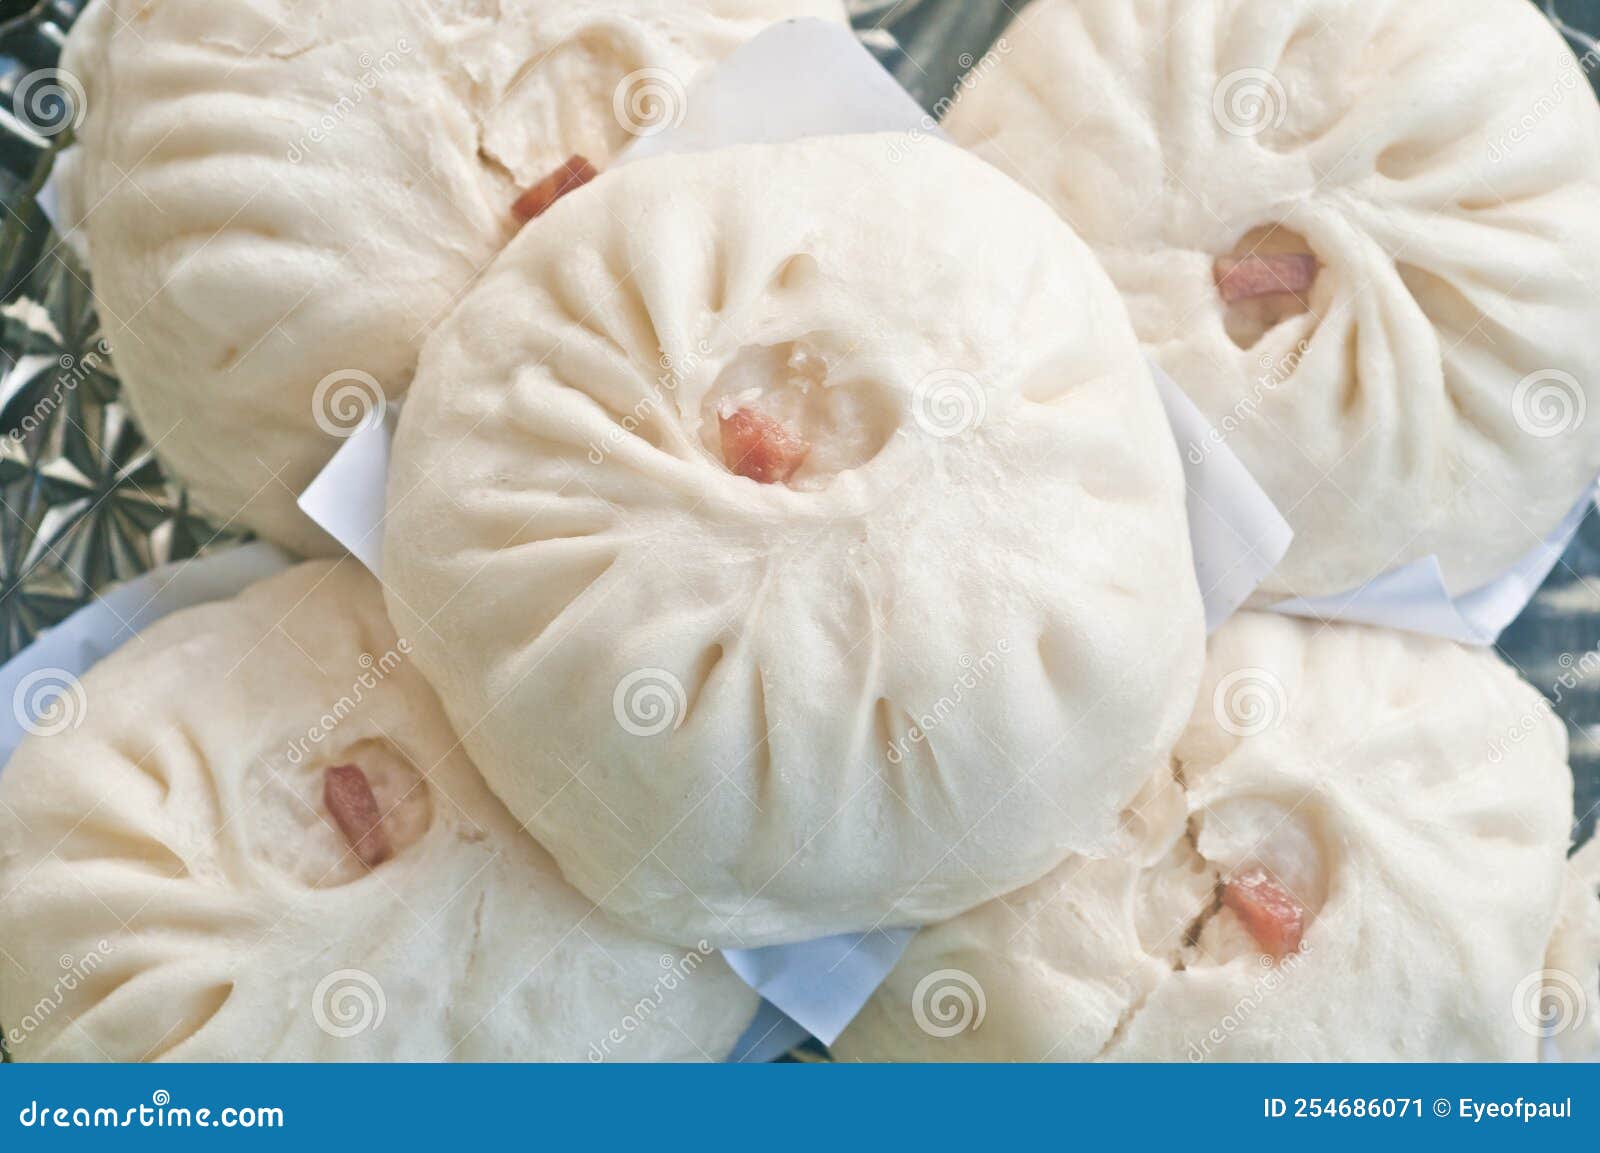 white soft fluffy chinese white bbq pork baos